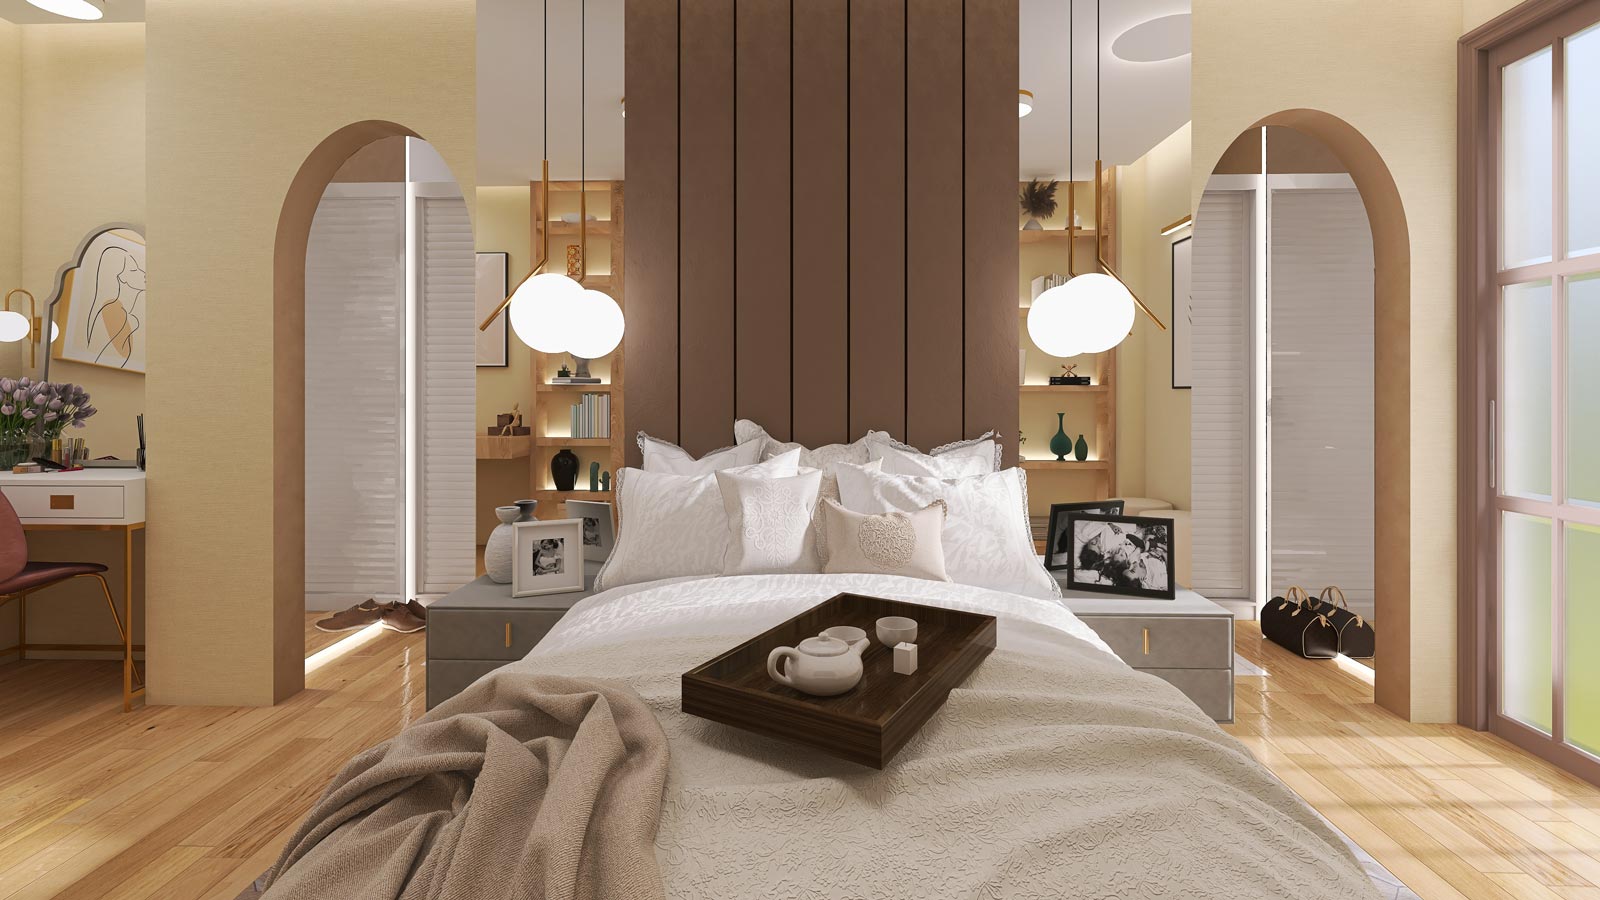 diseño vestidor baño proyecto interiorismo dormitorio elegancia natural